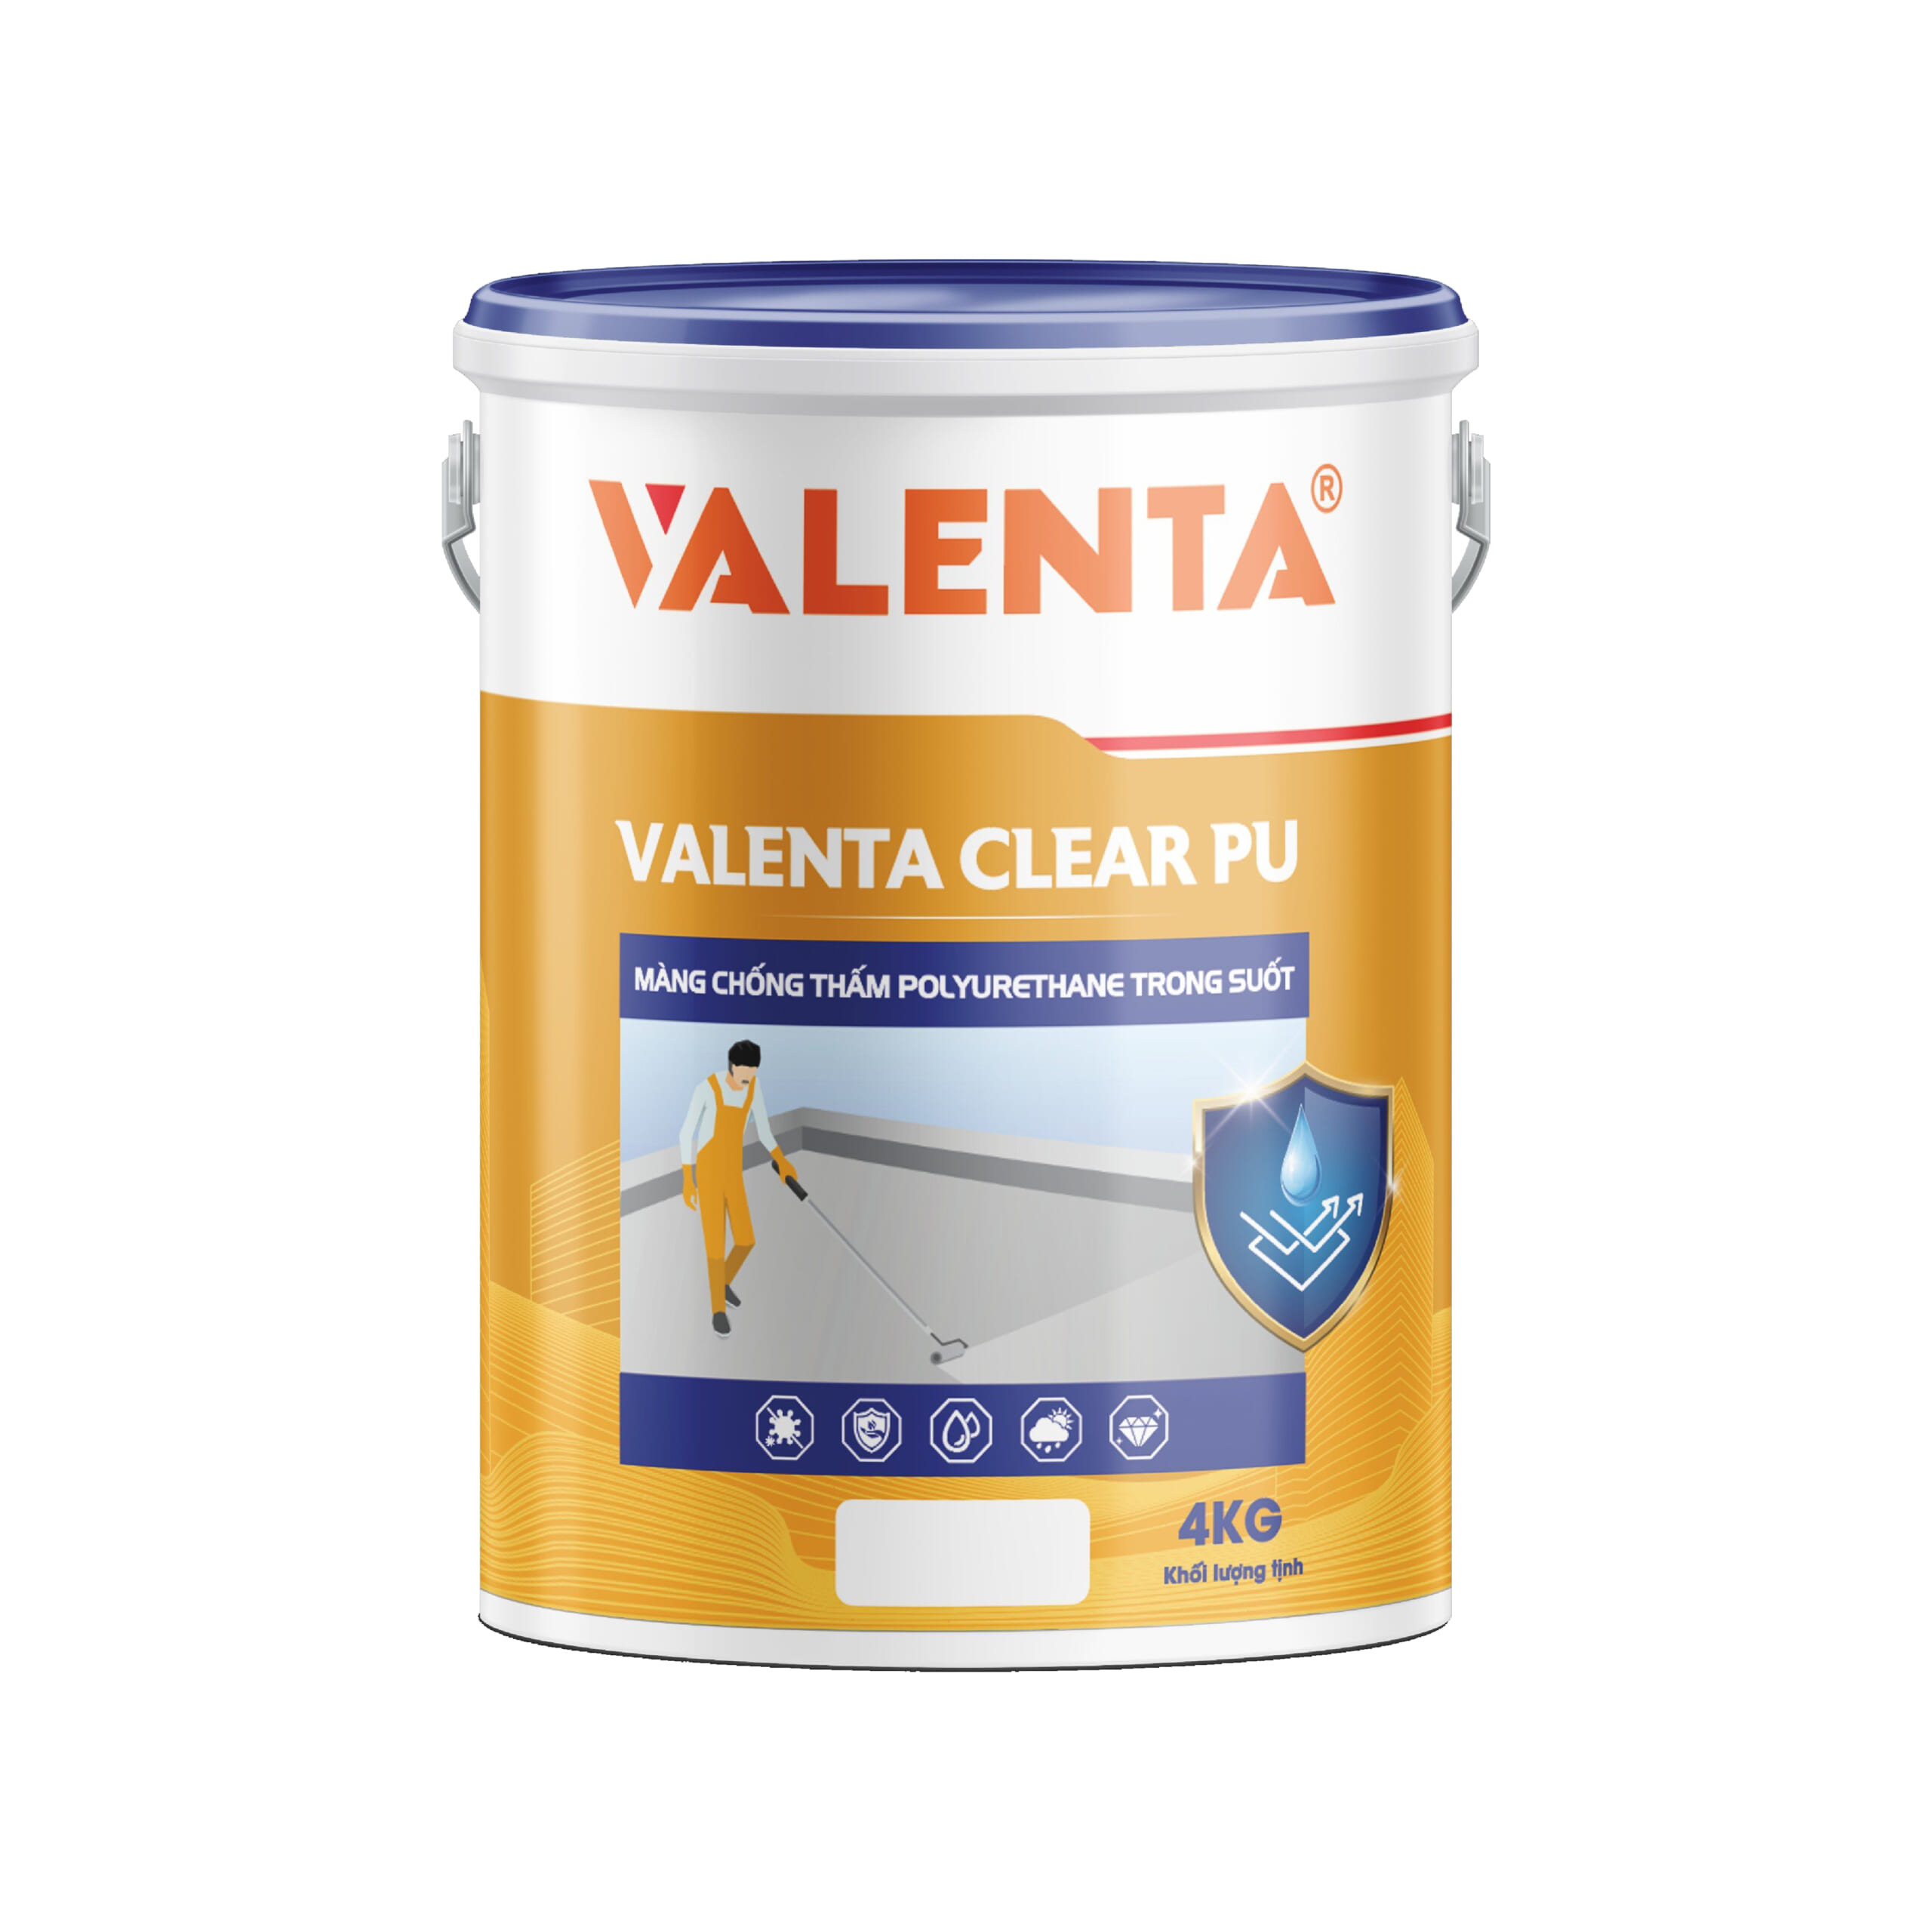 VALENTA CLEAR PU